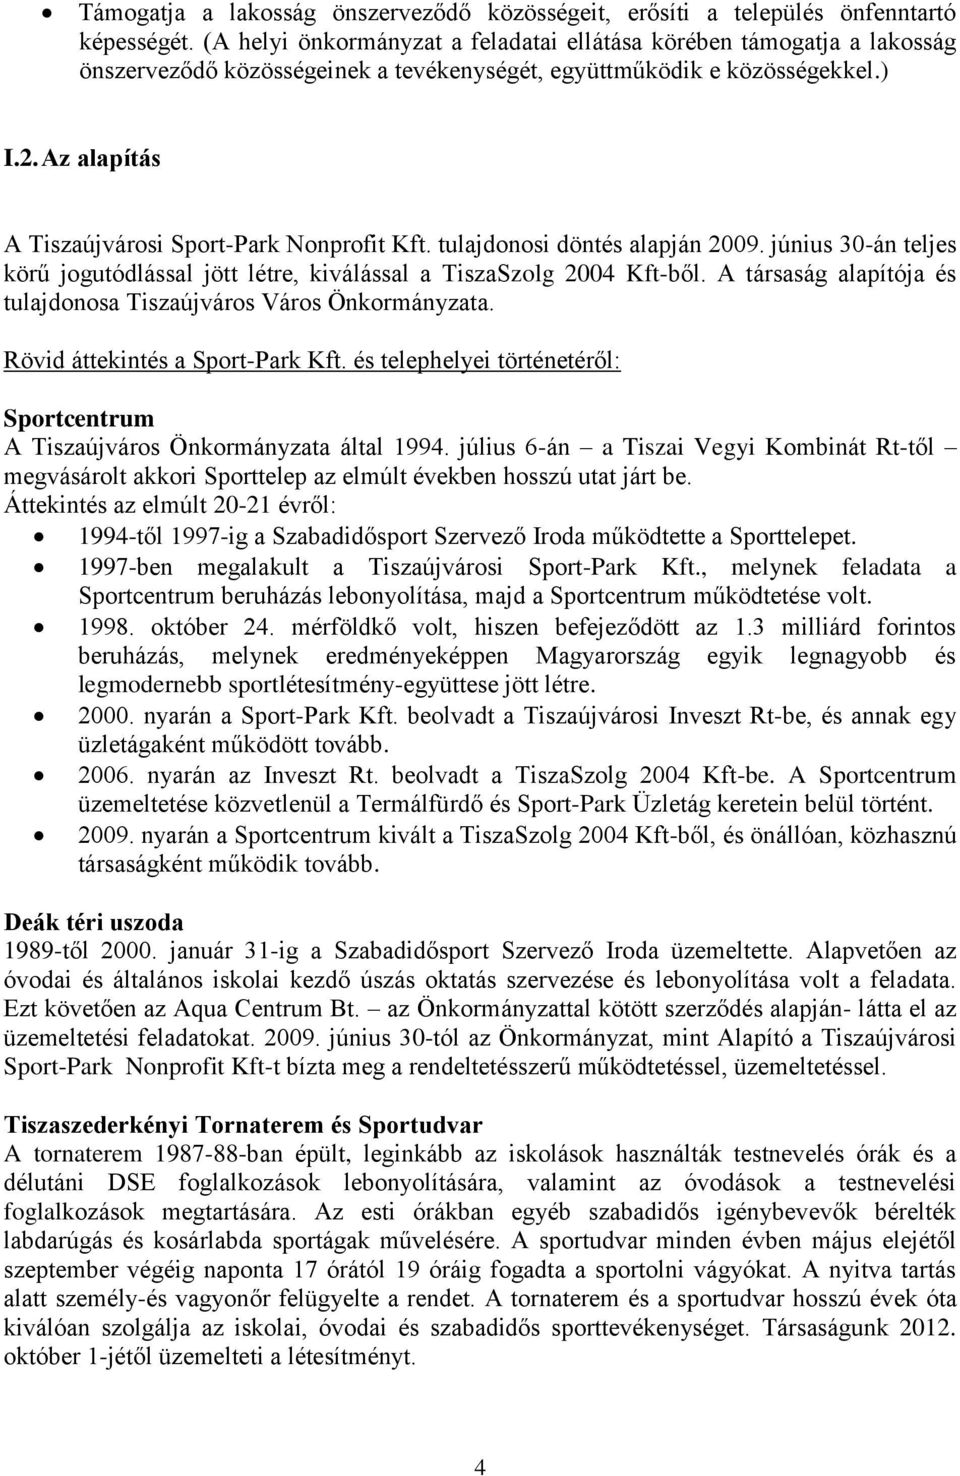 Az alapítás A Tiszaújvárosi Sport-Park Nonprofit Kft. tulajdonosi döntés alapján 2009. június 30-án teljes körű jogutódlással jött létre, kiválással a TiszaSzolg 2004 Kft-ből.